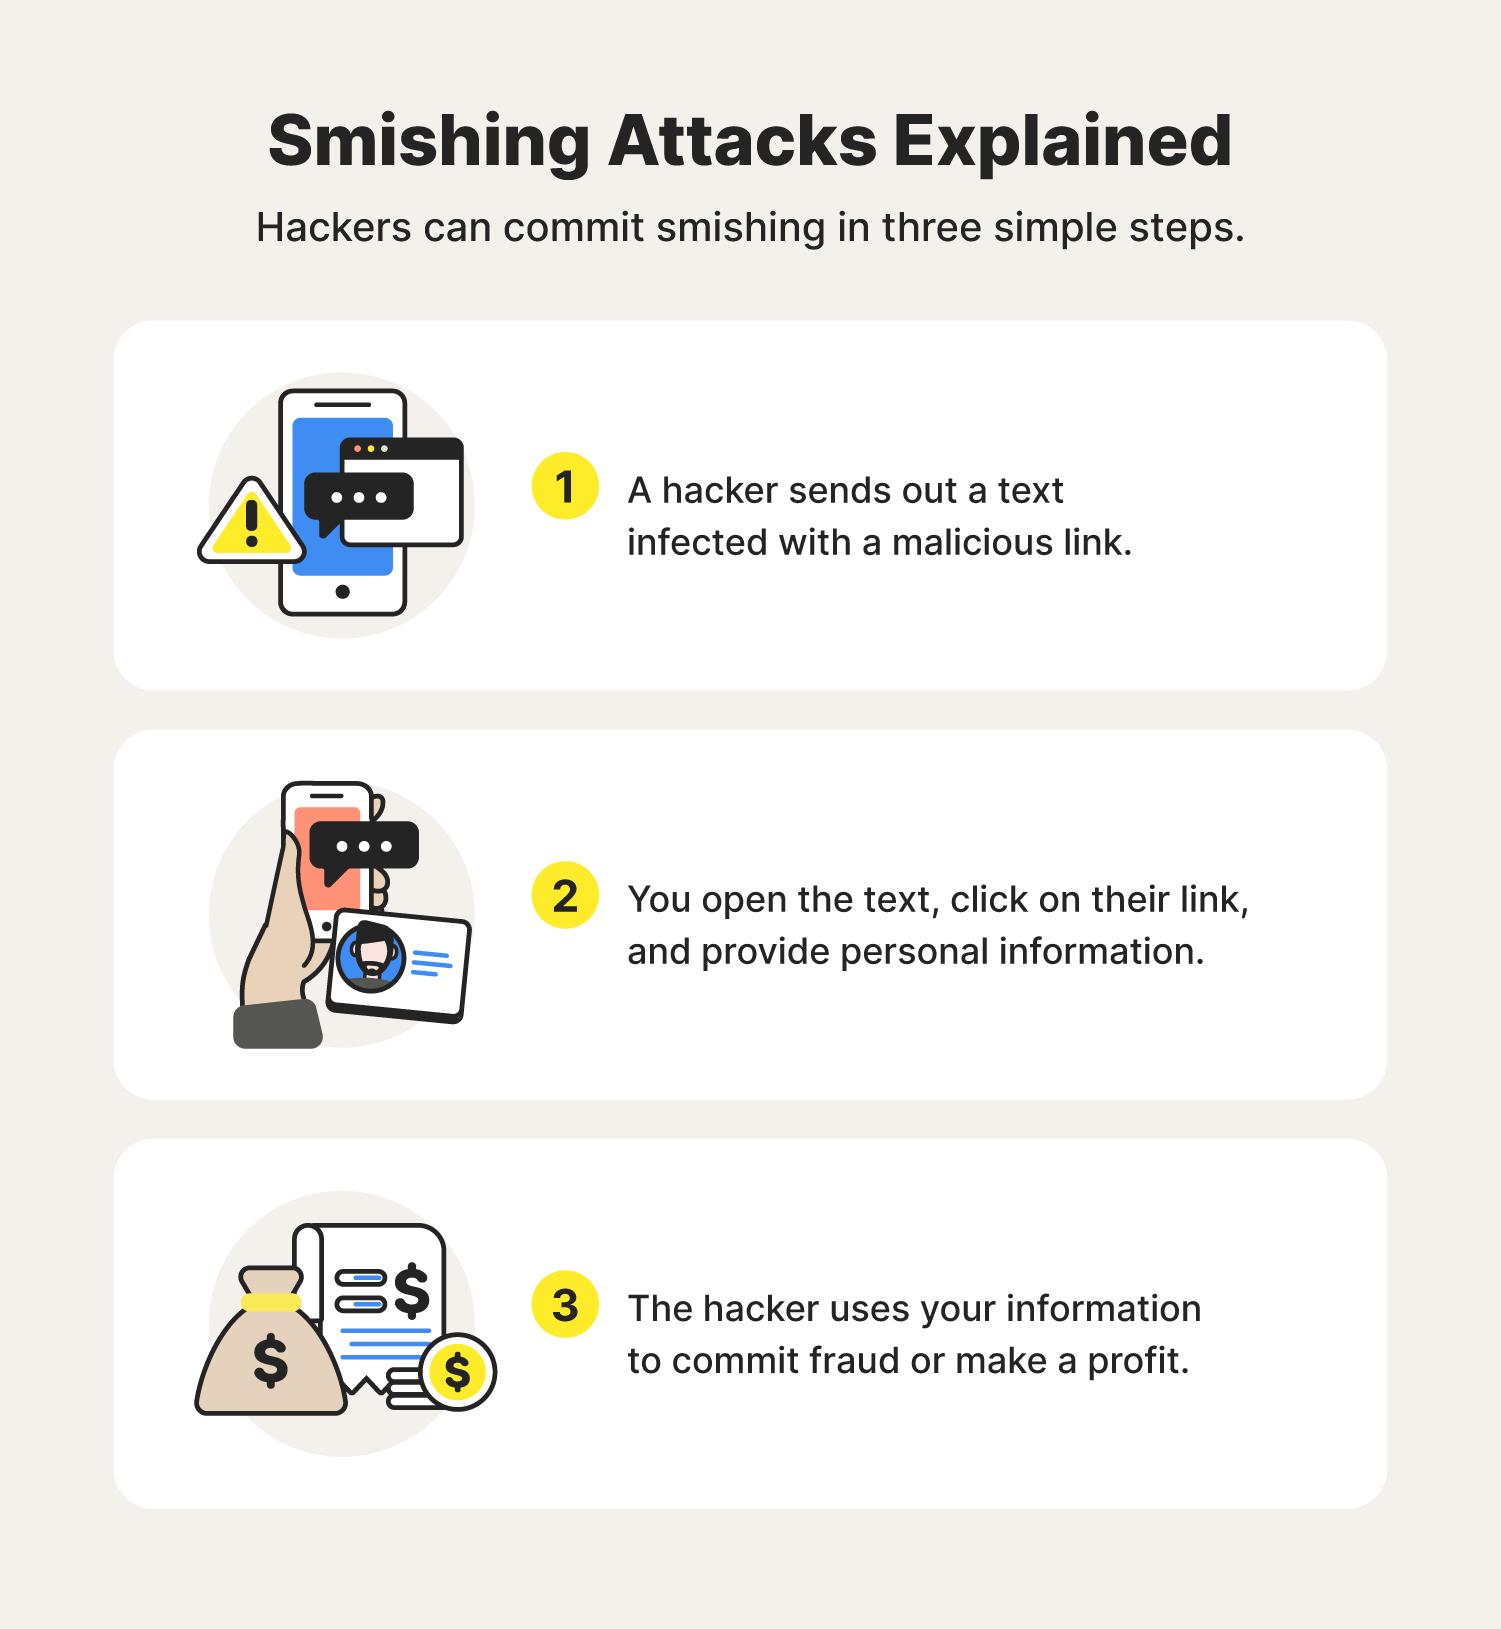 Smishing attacks explained